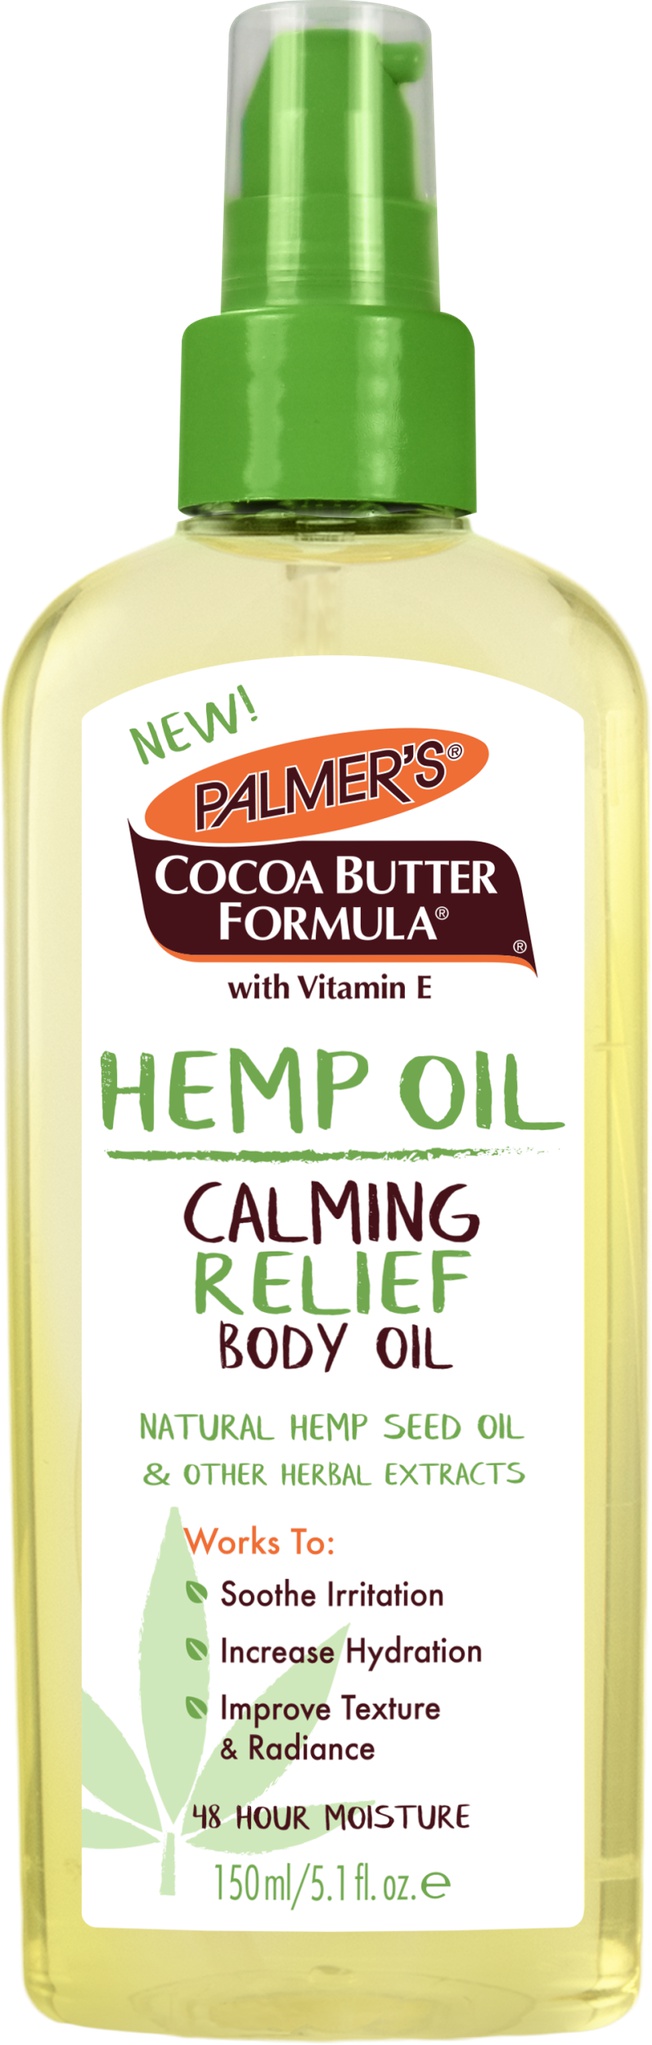 Palmer's Hemp Oil